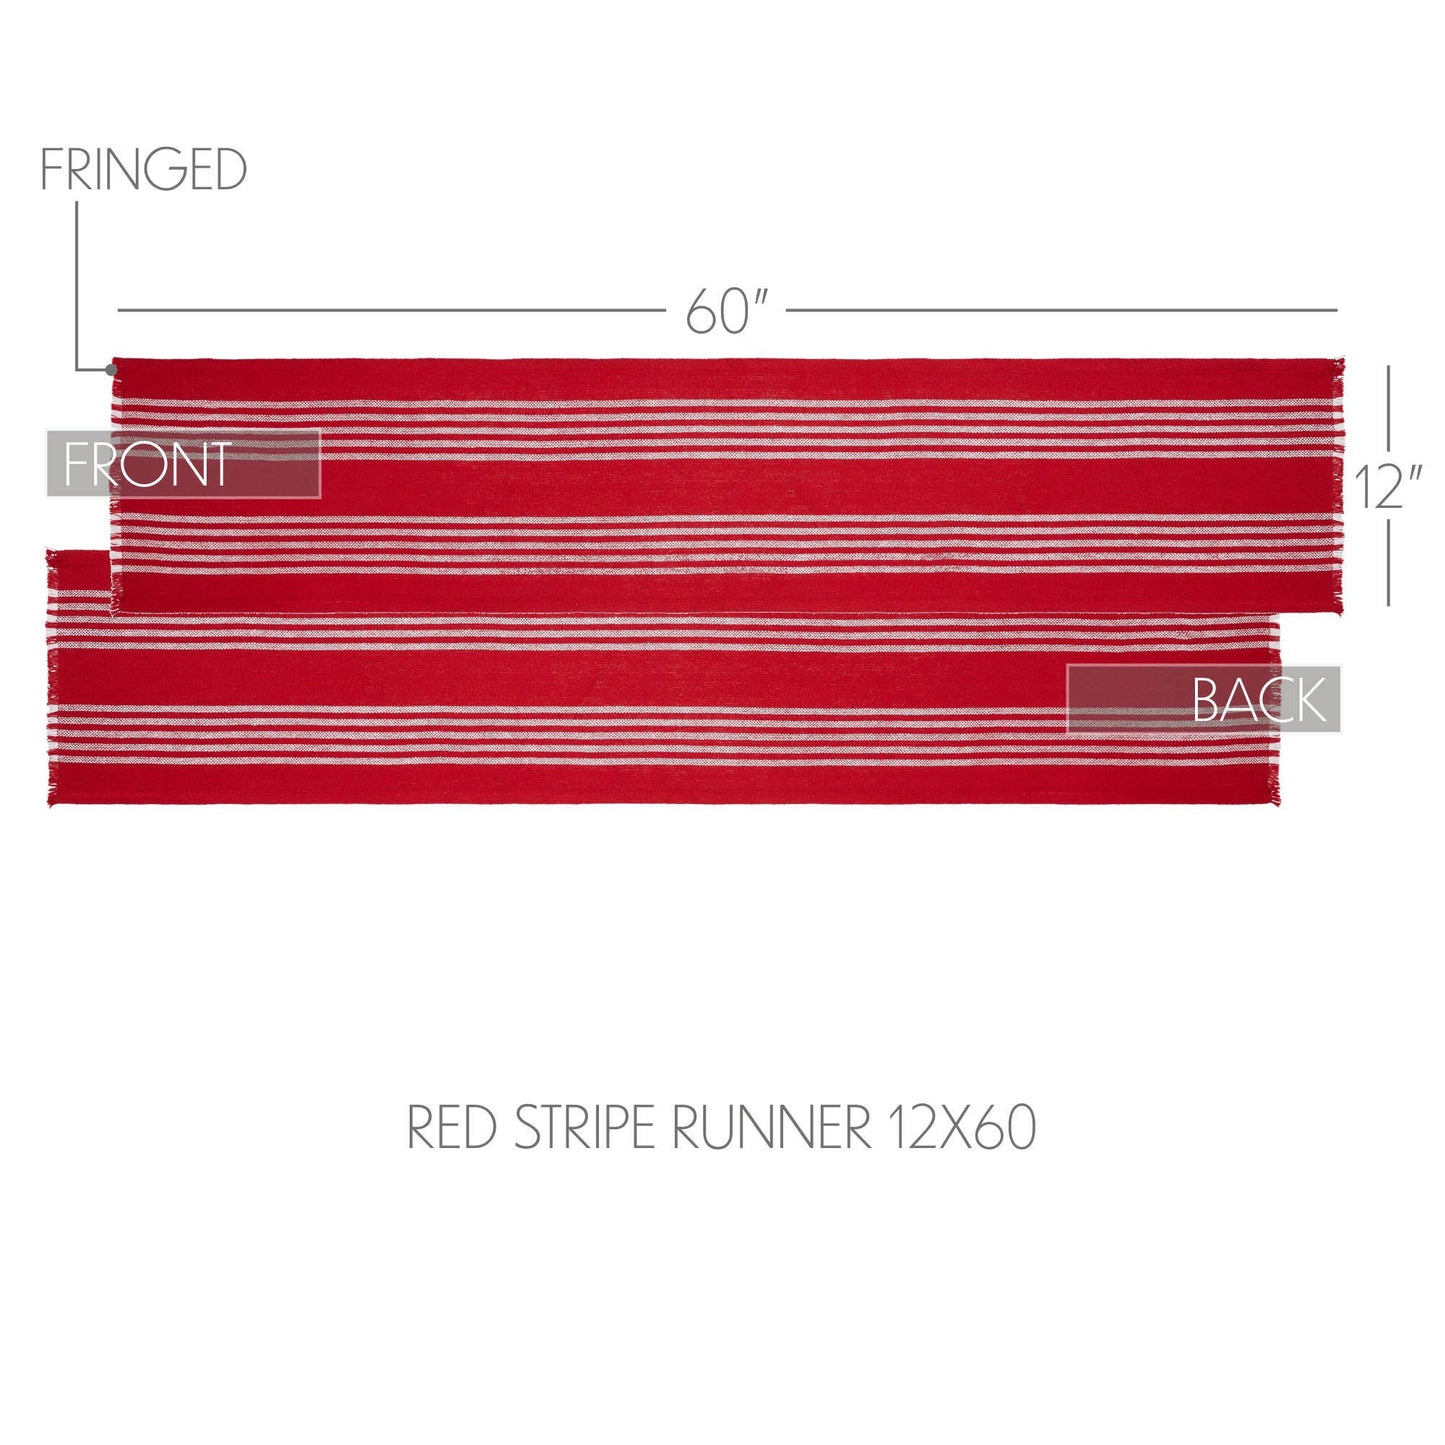 Arendal Red Stripe Runner Fringed 12"x60"